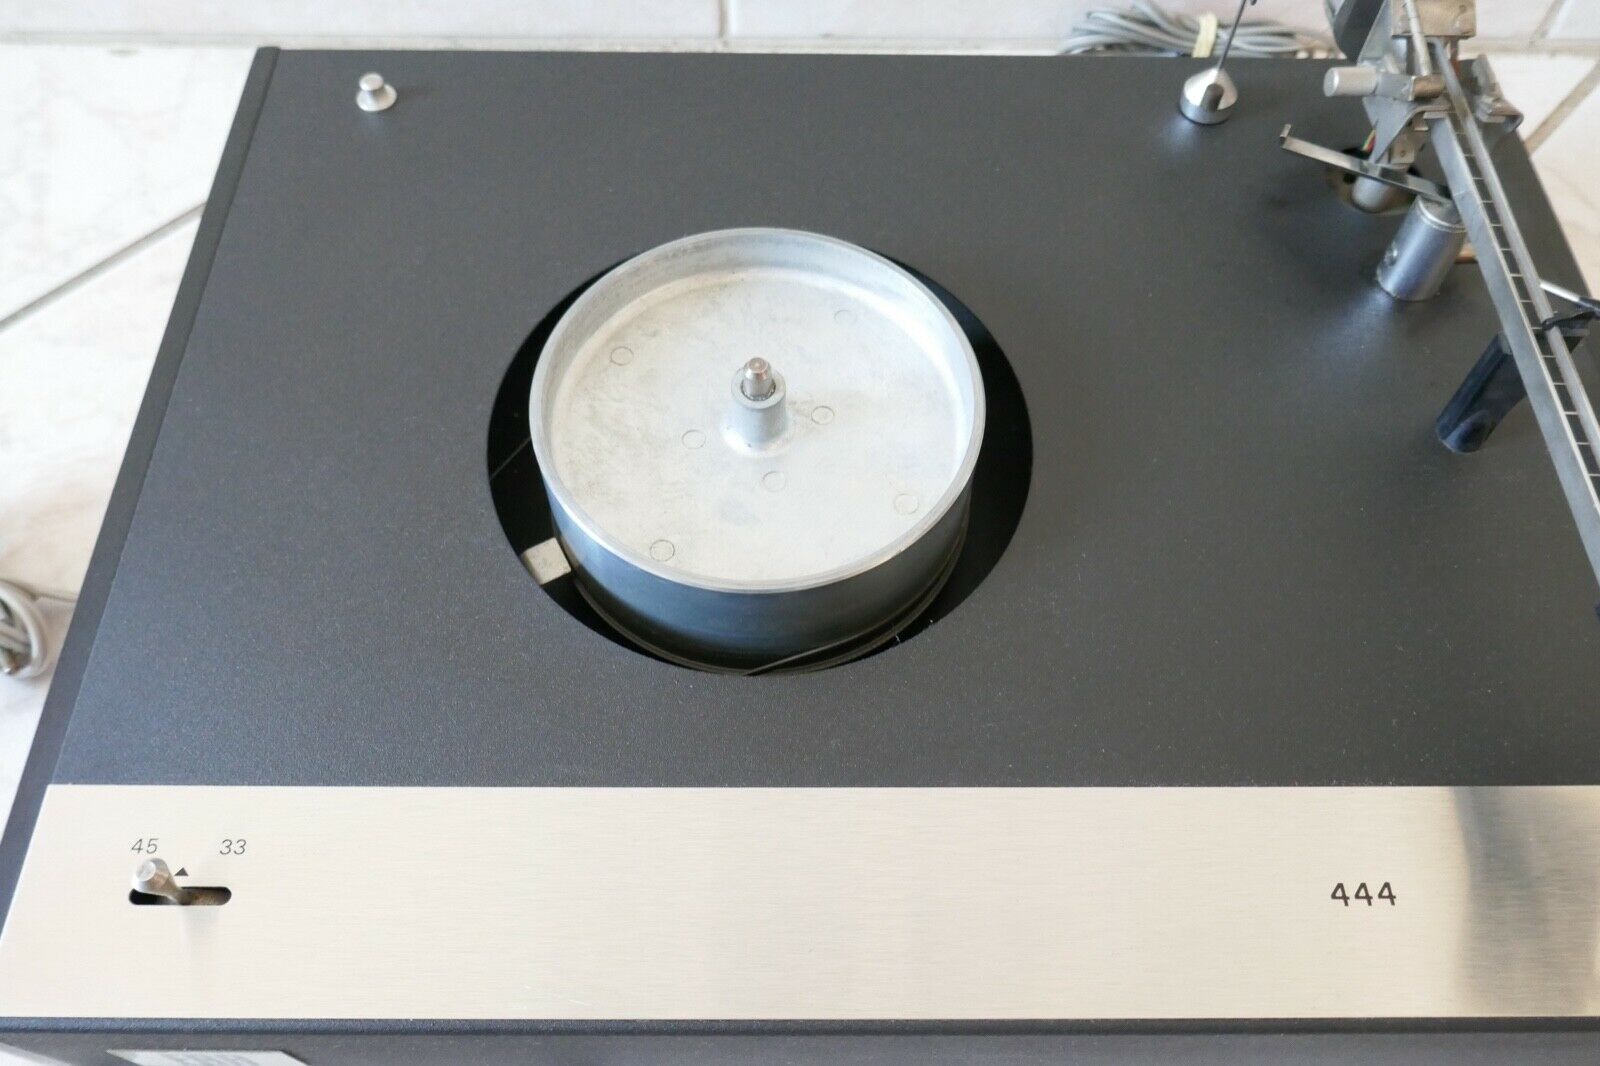 platine vinyle turntable era 444 vintage occasion